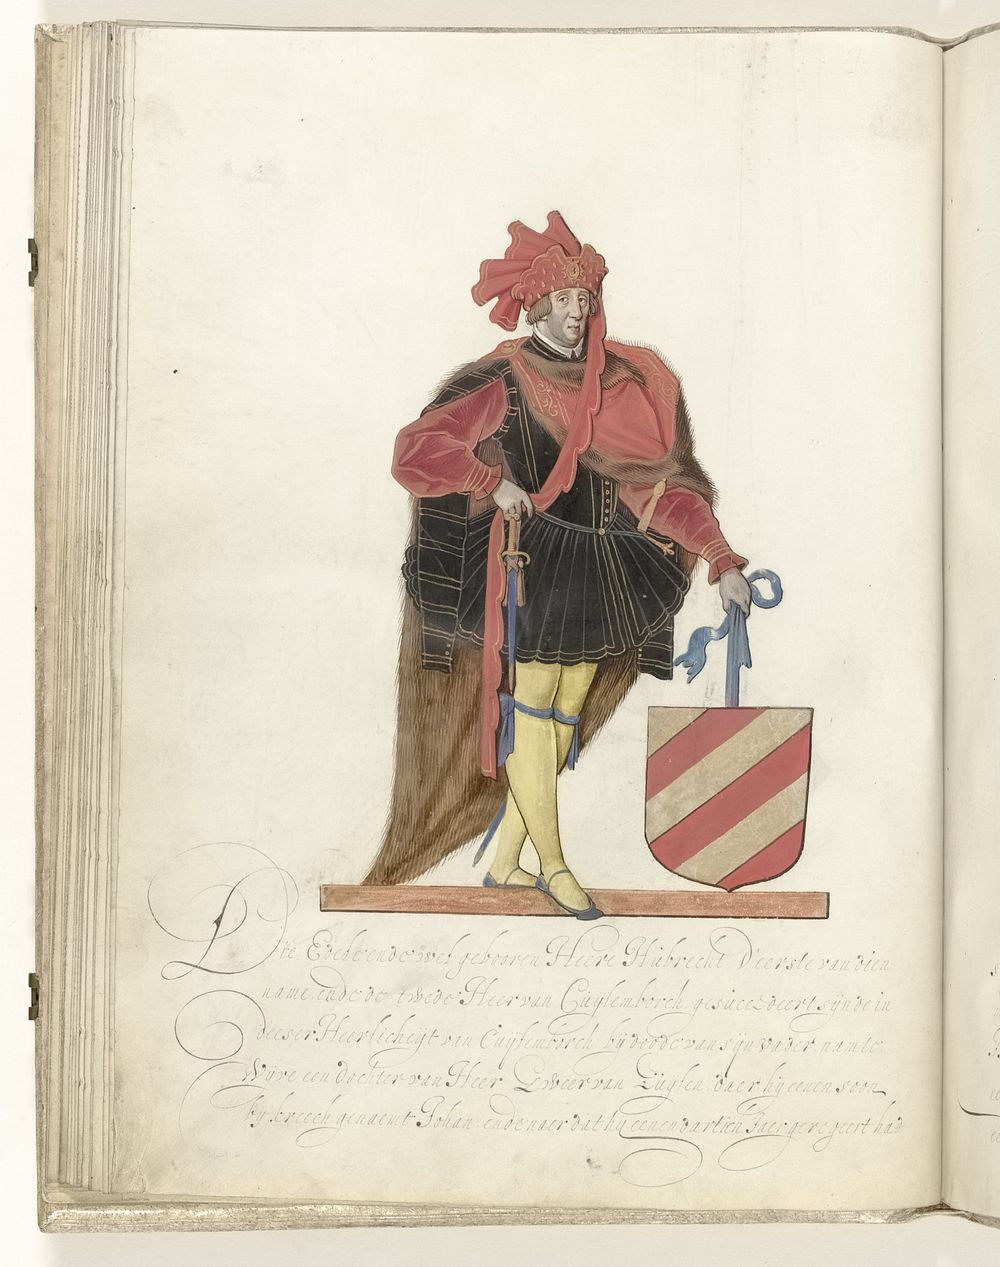 Hubrecht, heer van Culemborg (c. 1600 - c. 1625) by Nicolaes de Kemp and anonymous